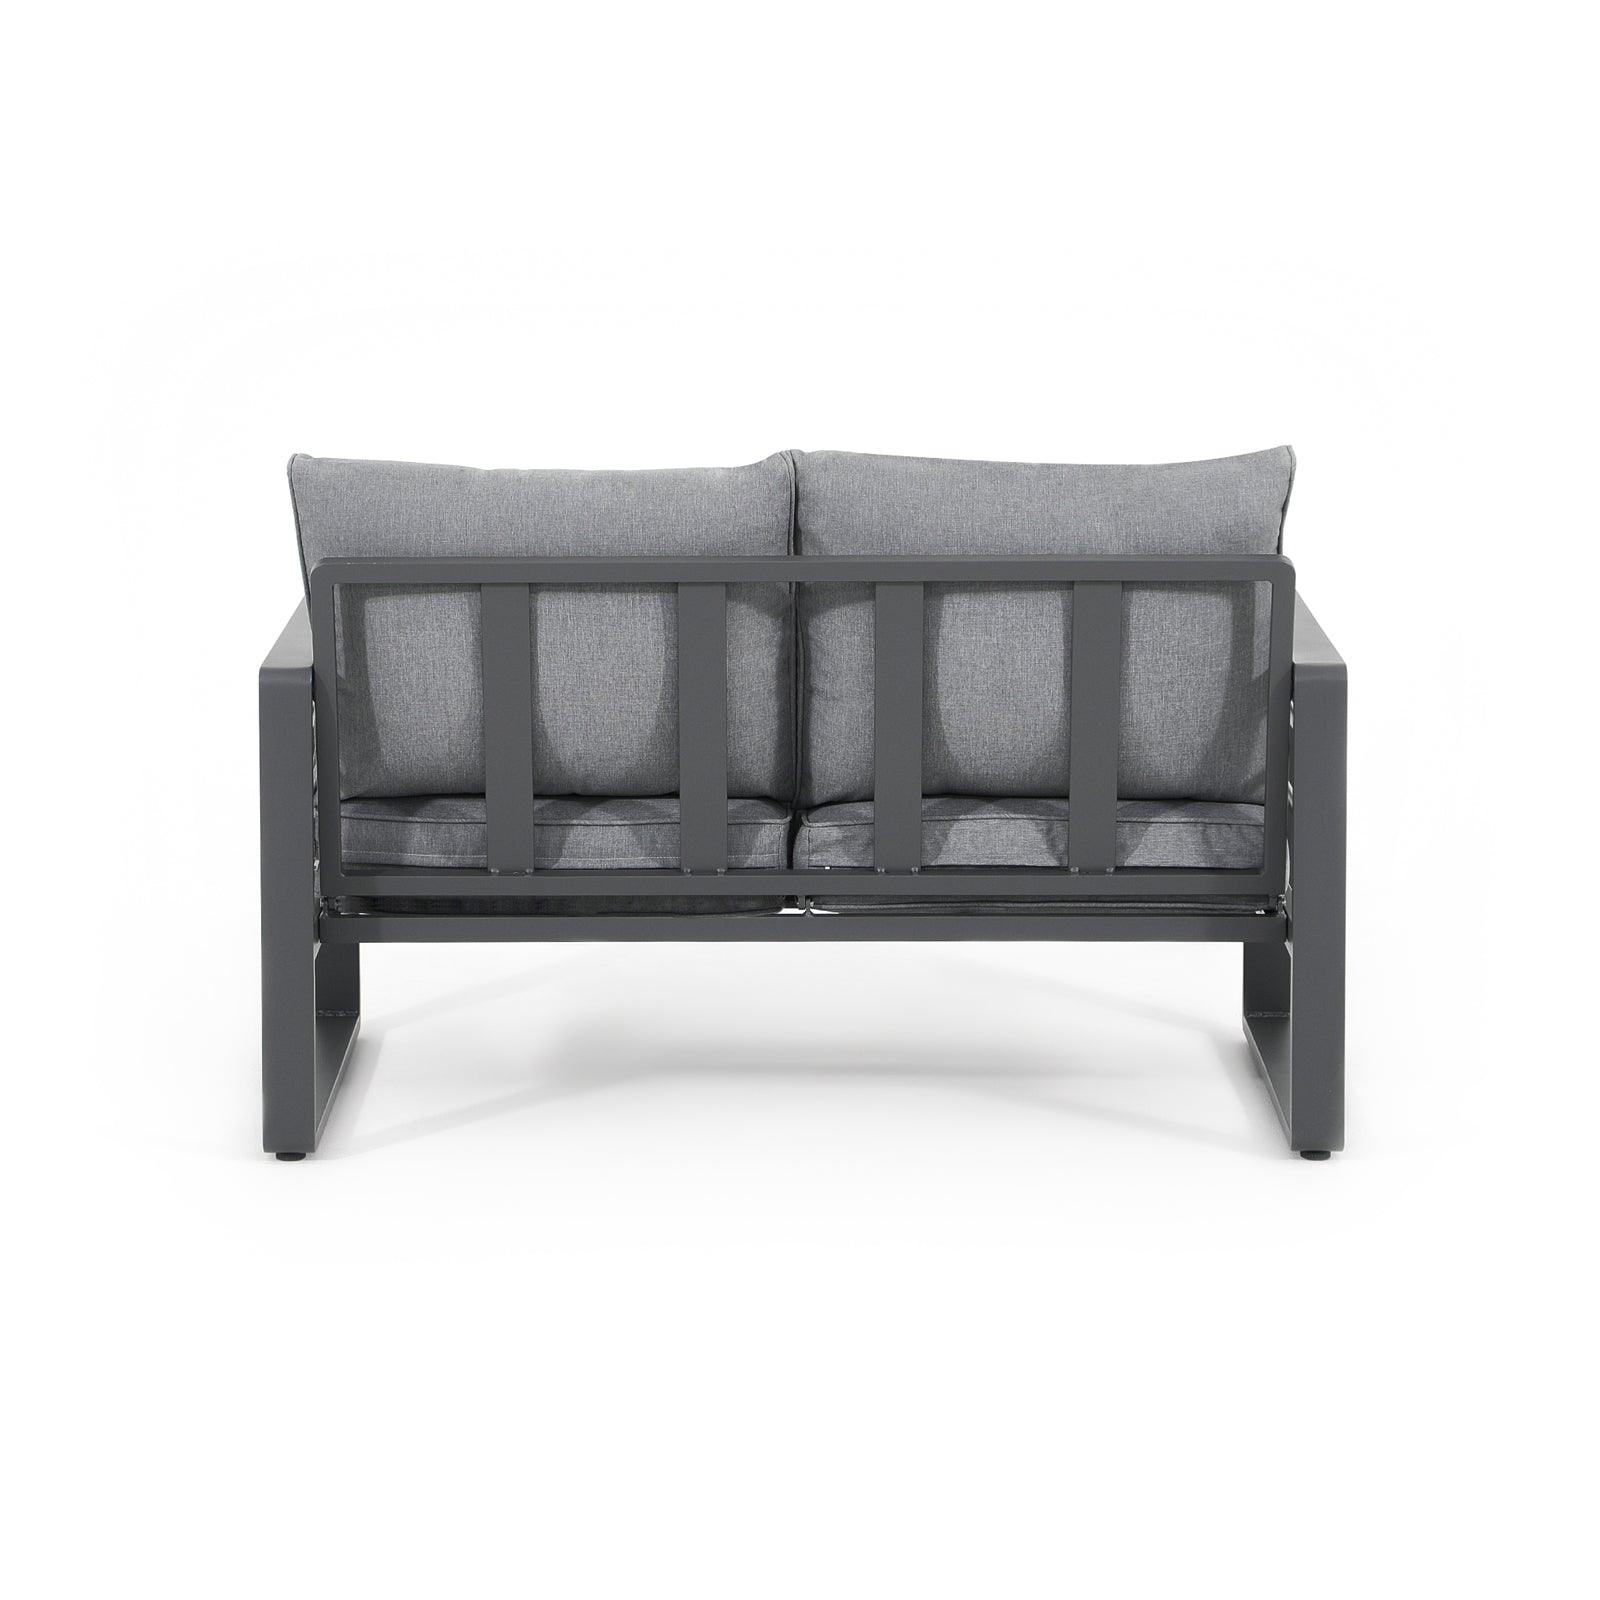 Salina grey outdoor loveseat with aluminum frame, grey cushions, back - Jardina Furniture